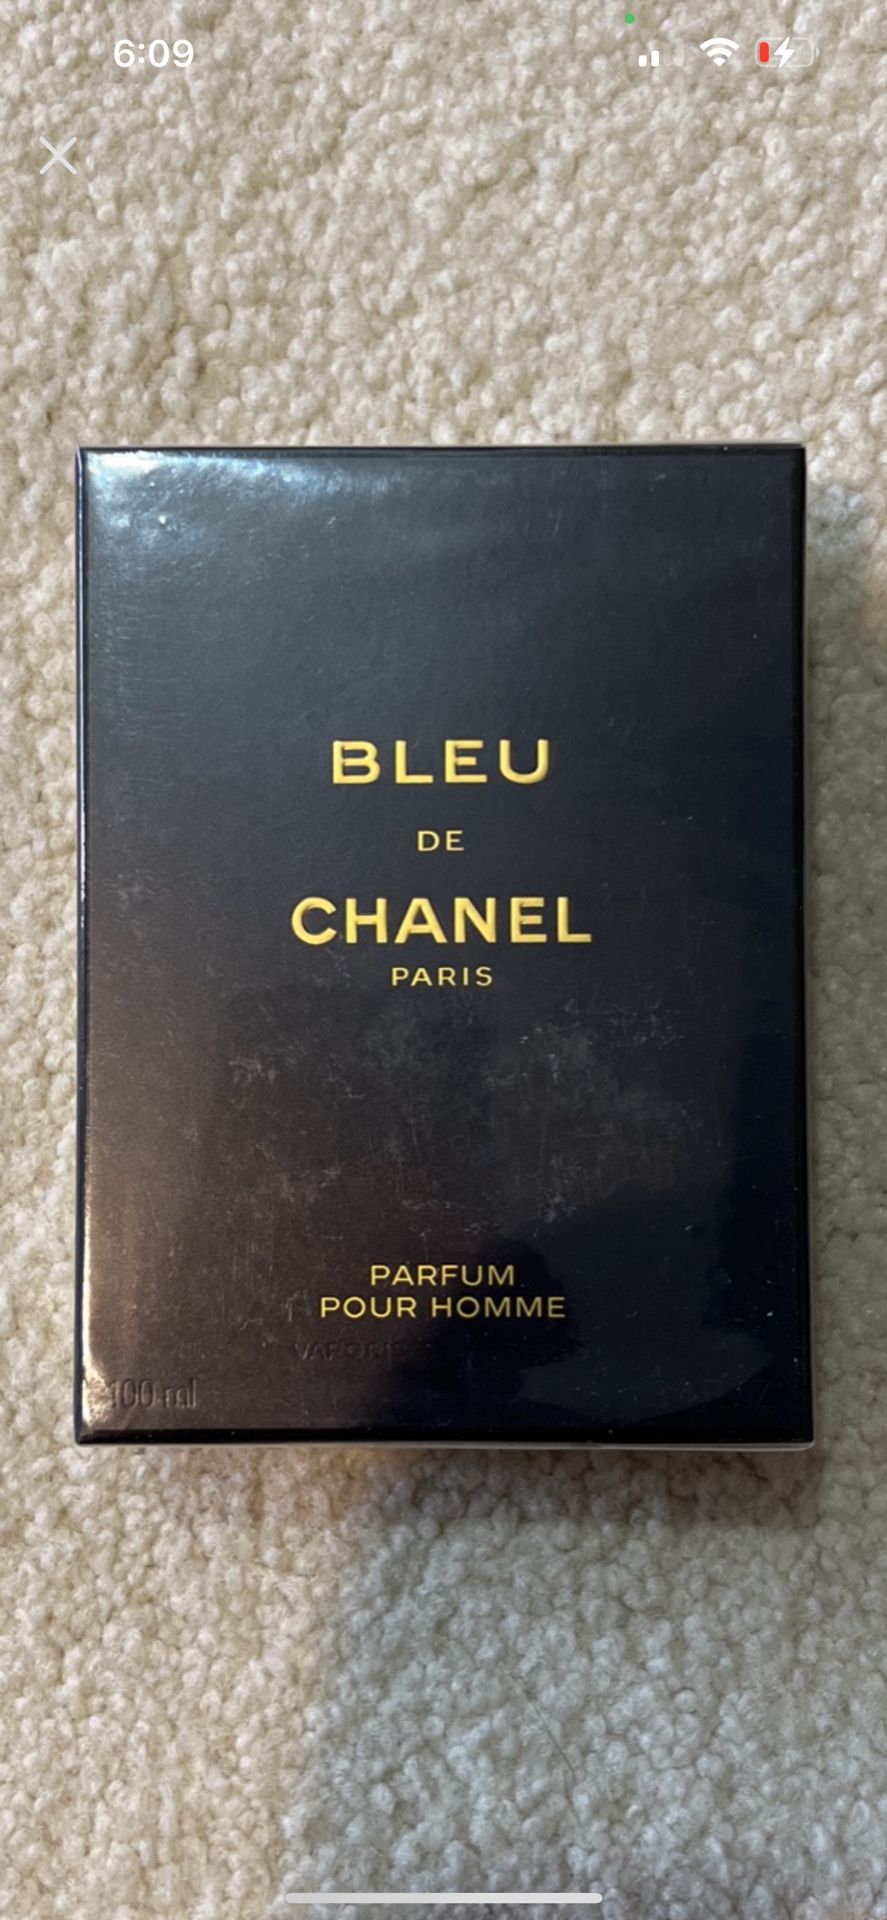 BLEU DE CHANEL PARIS PARFUM POUR HOMME